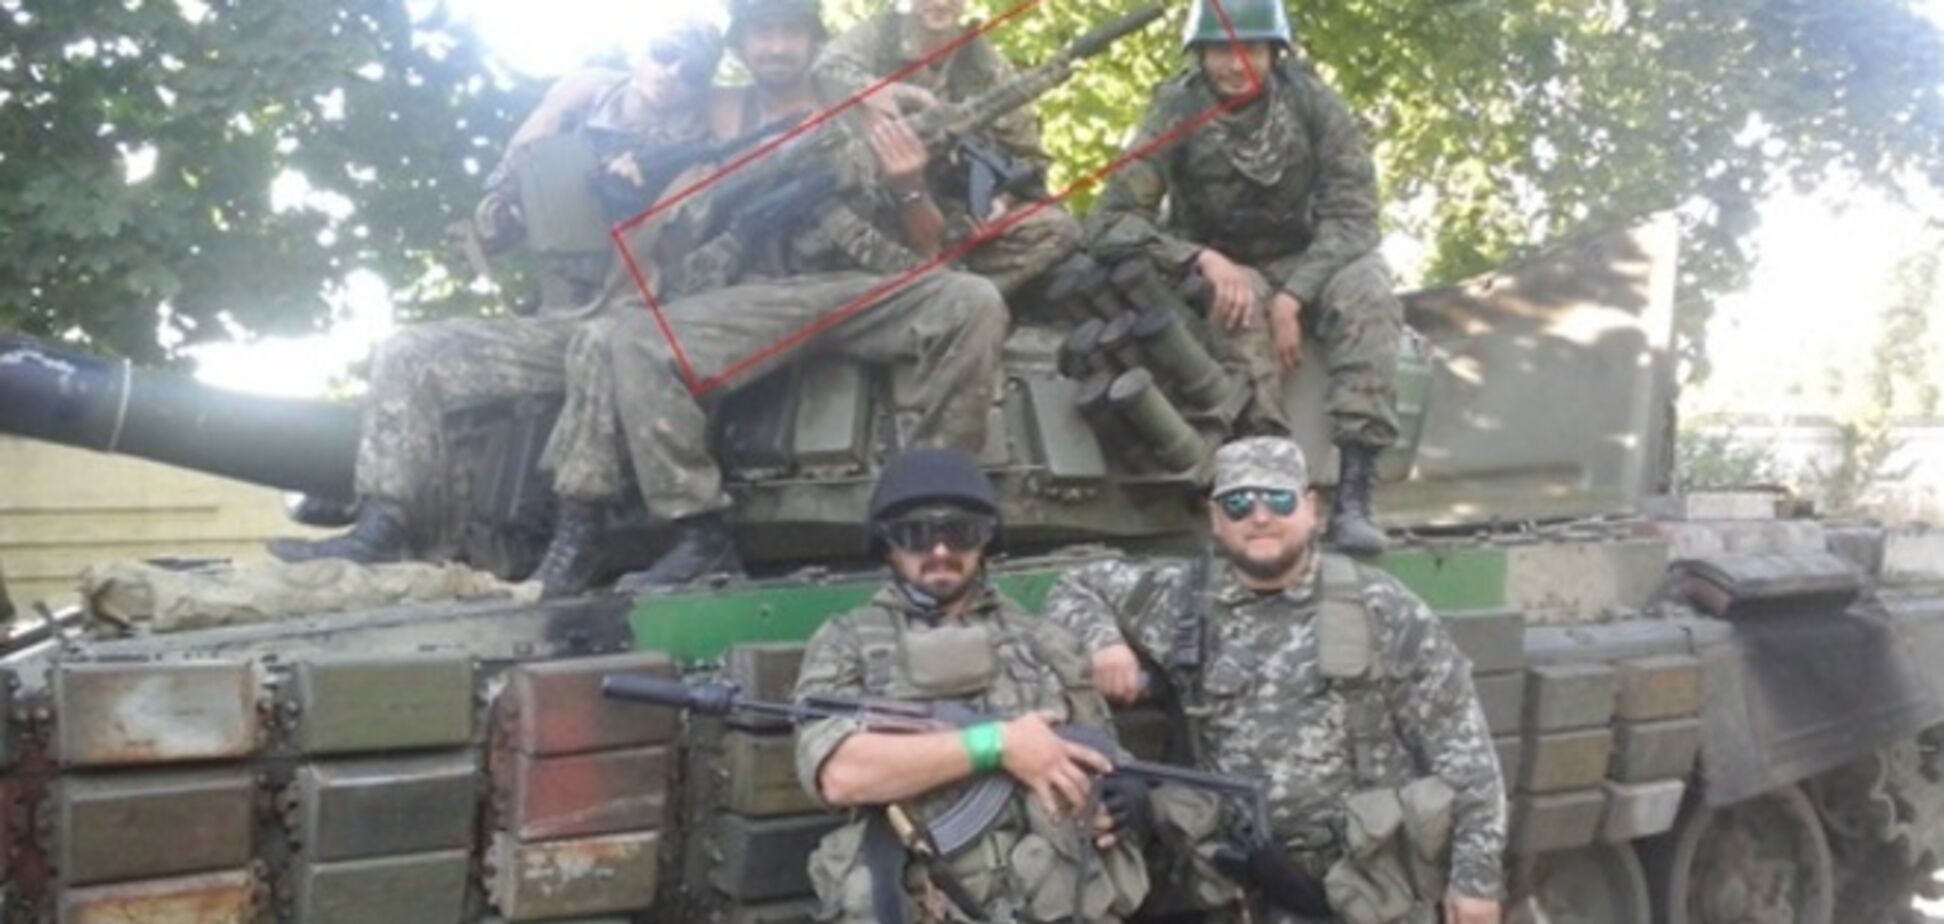 Россия испытывает новейшее оружие на Донбассе, поставляя его боевикам: опубликовано фото